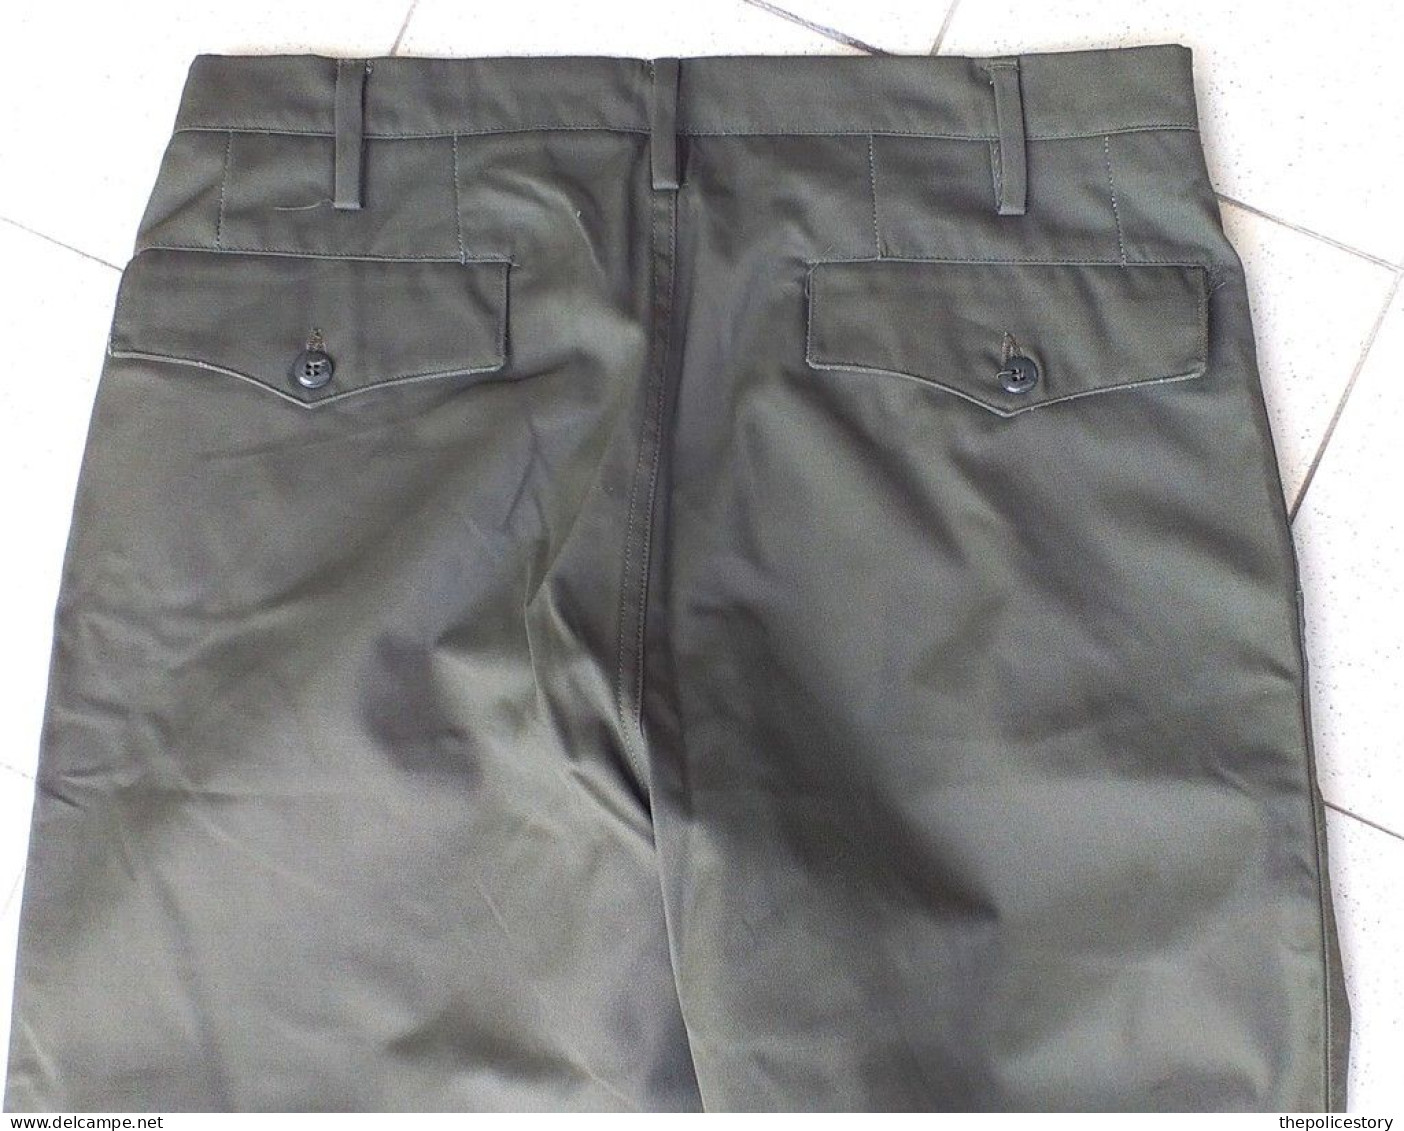 Giacca pantaloni mimetici verdi specifici GDF del 1981 etichettati mai usati